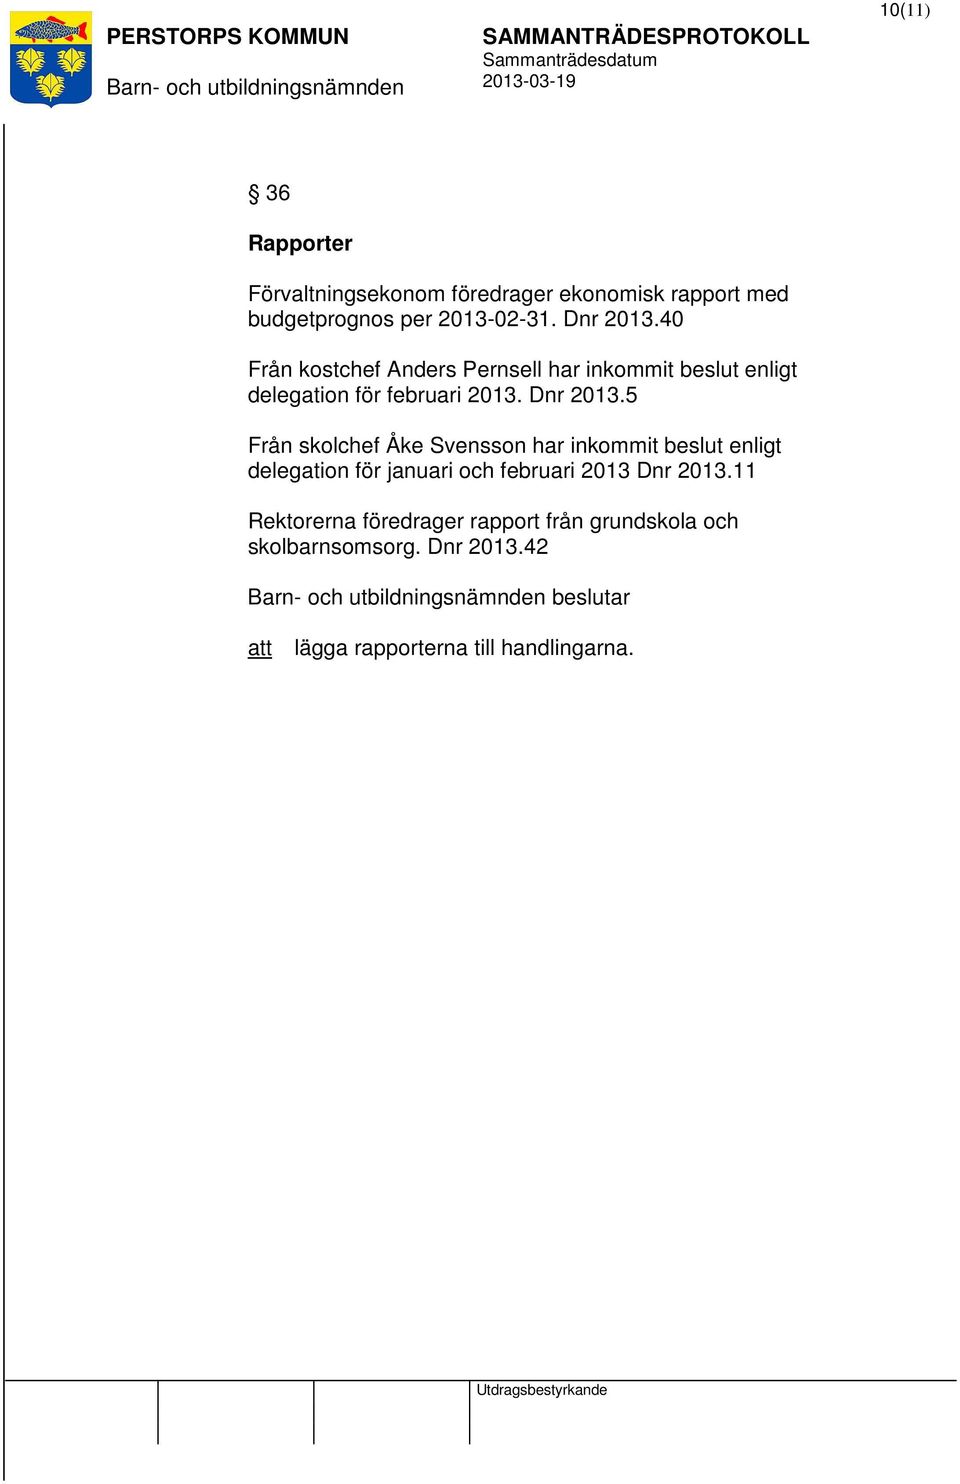 5 Från skolchef Åke Svensson har inkommit beslut enligt delegation för januari och februari 2013 Dnr 2013.